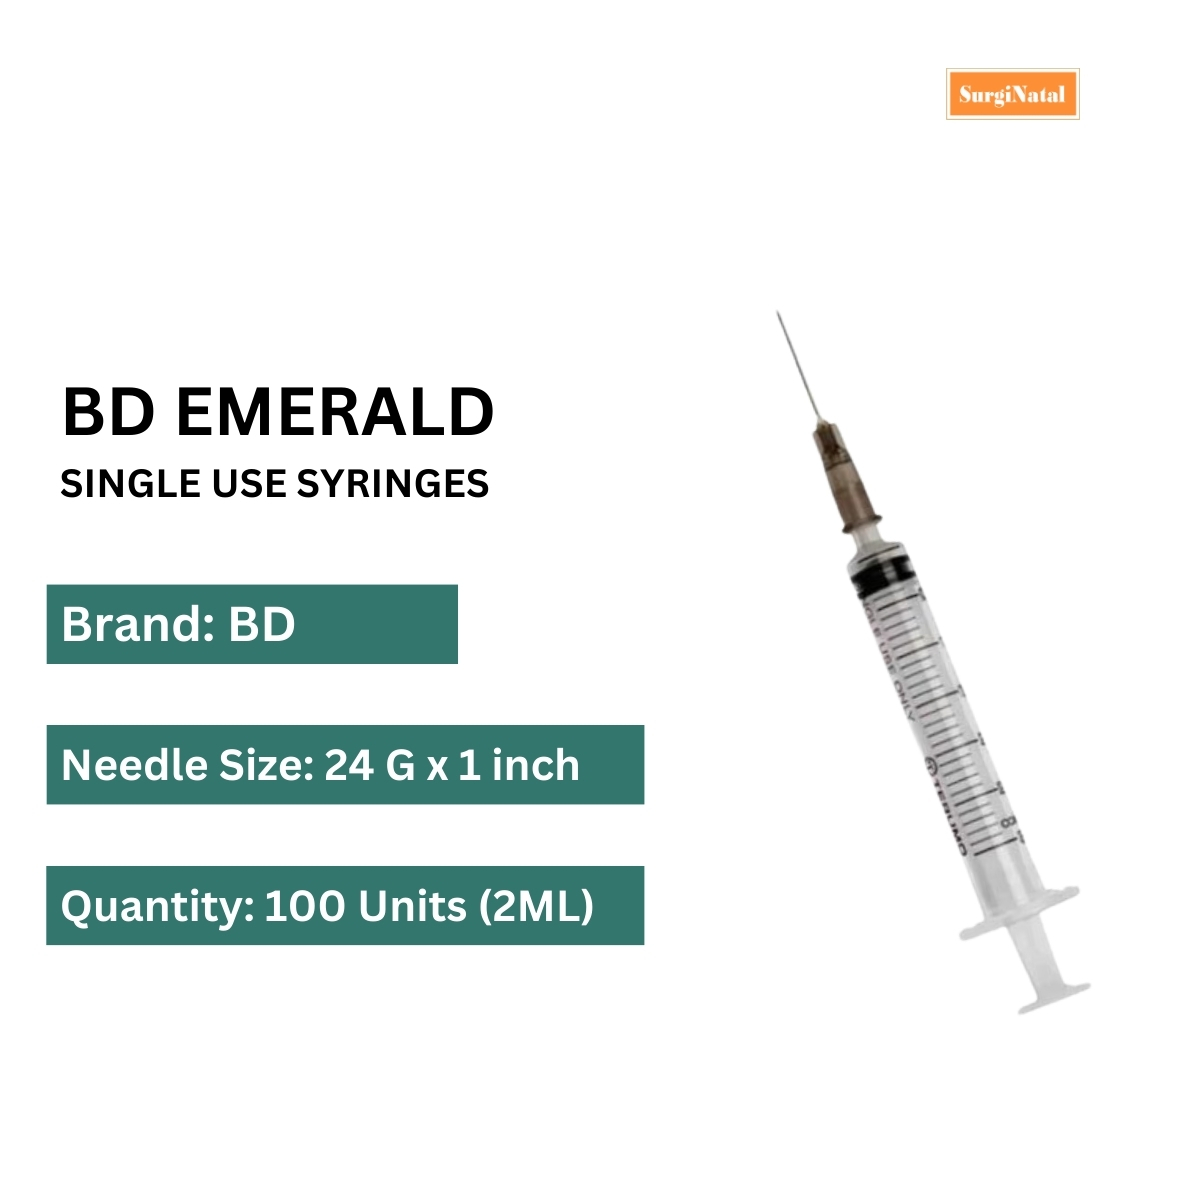 bd emerald 2ml syringe with needle 24g*1 inch -100 syringe box